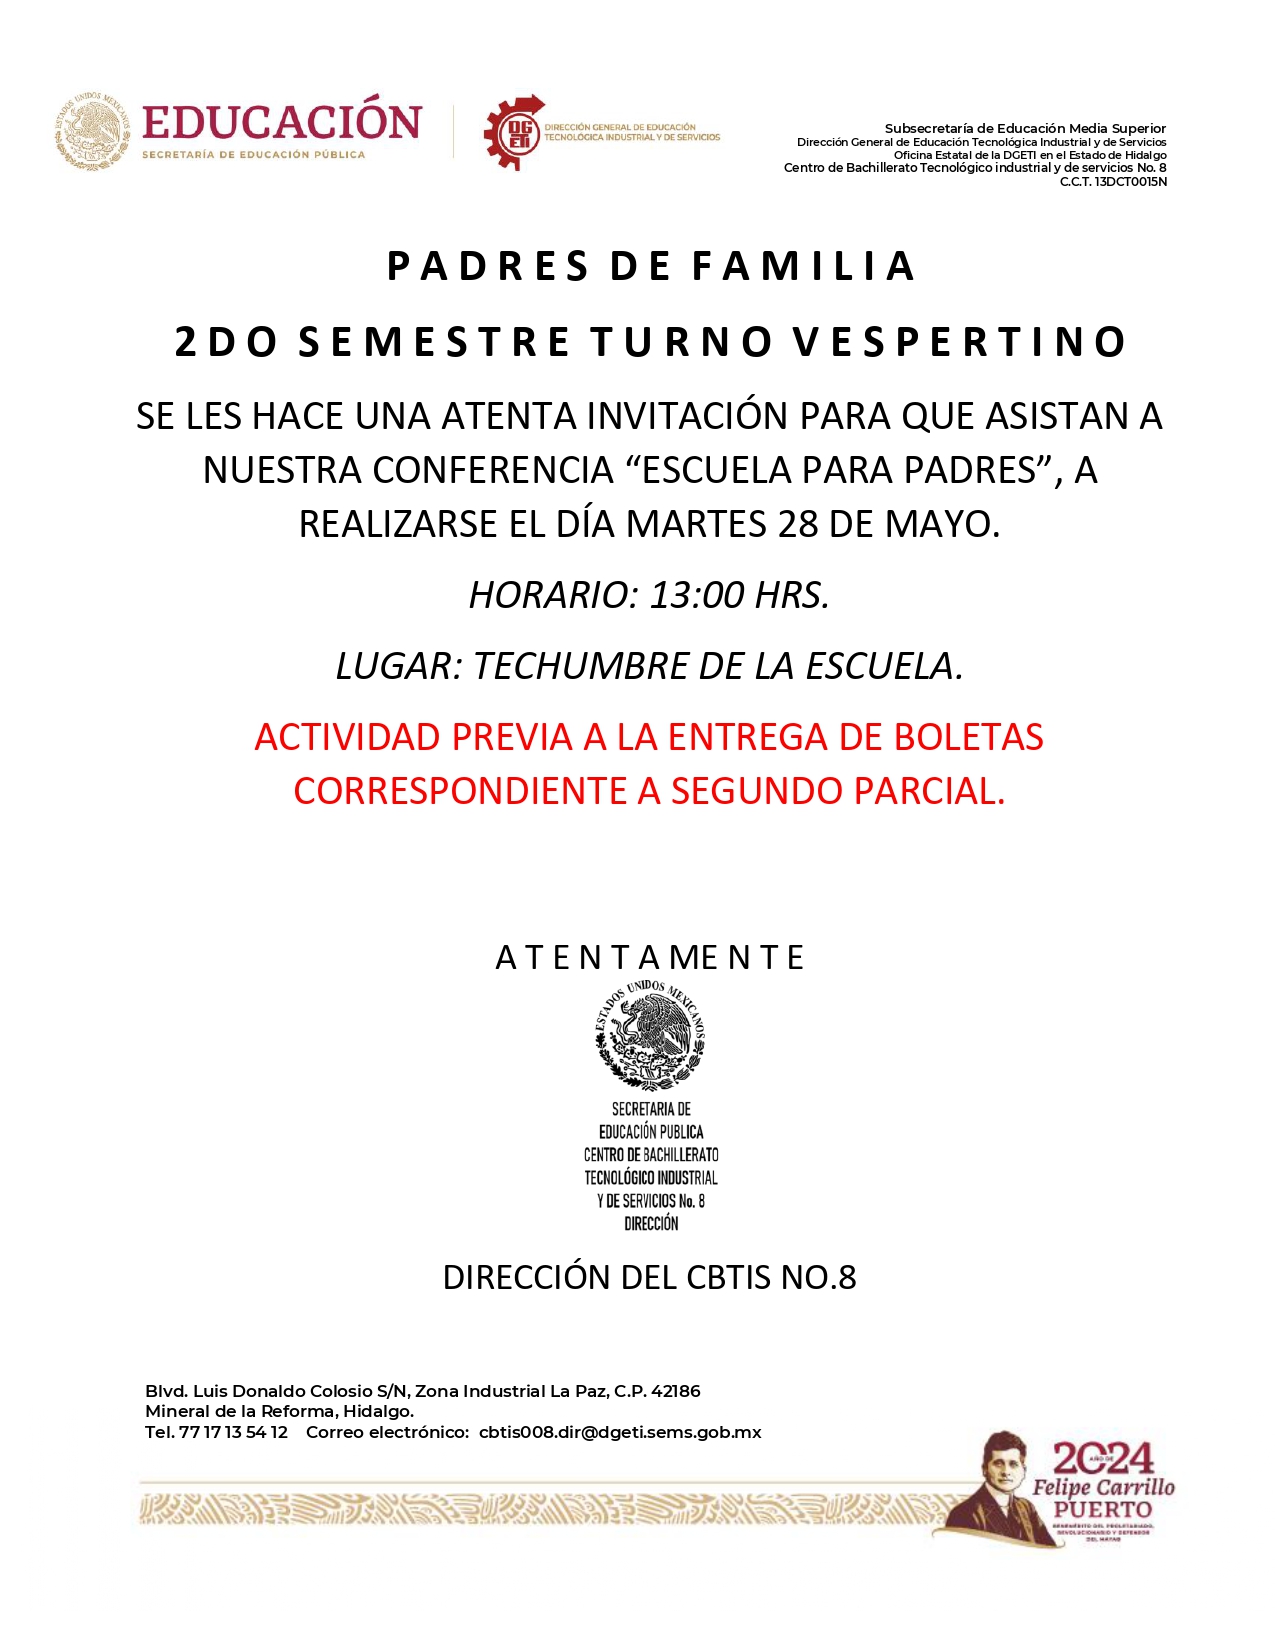 Invitación_escuela_para_padres_page-0001.jpg